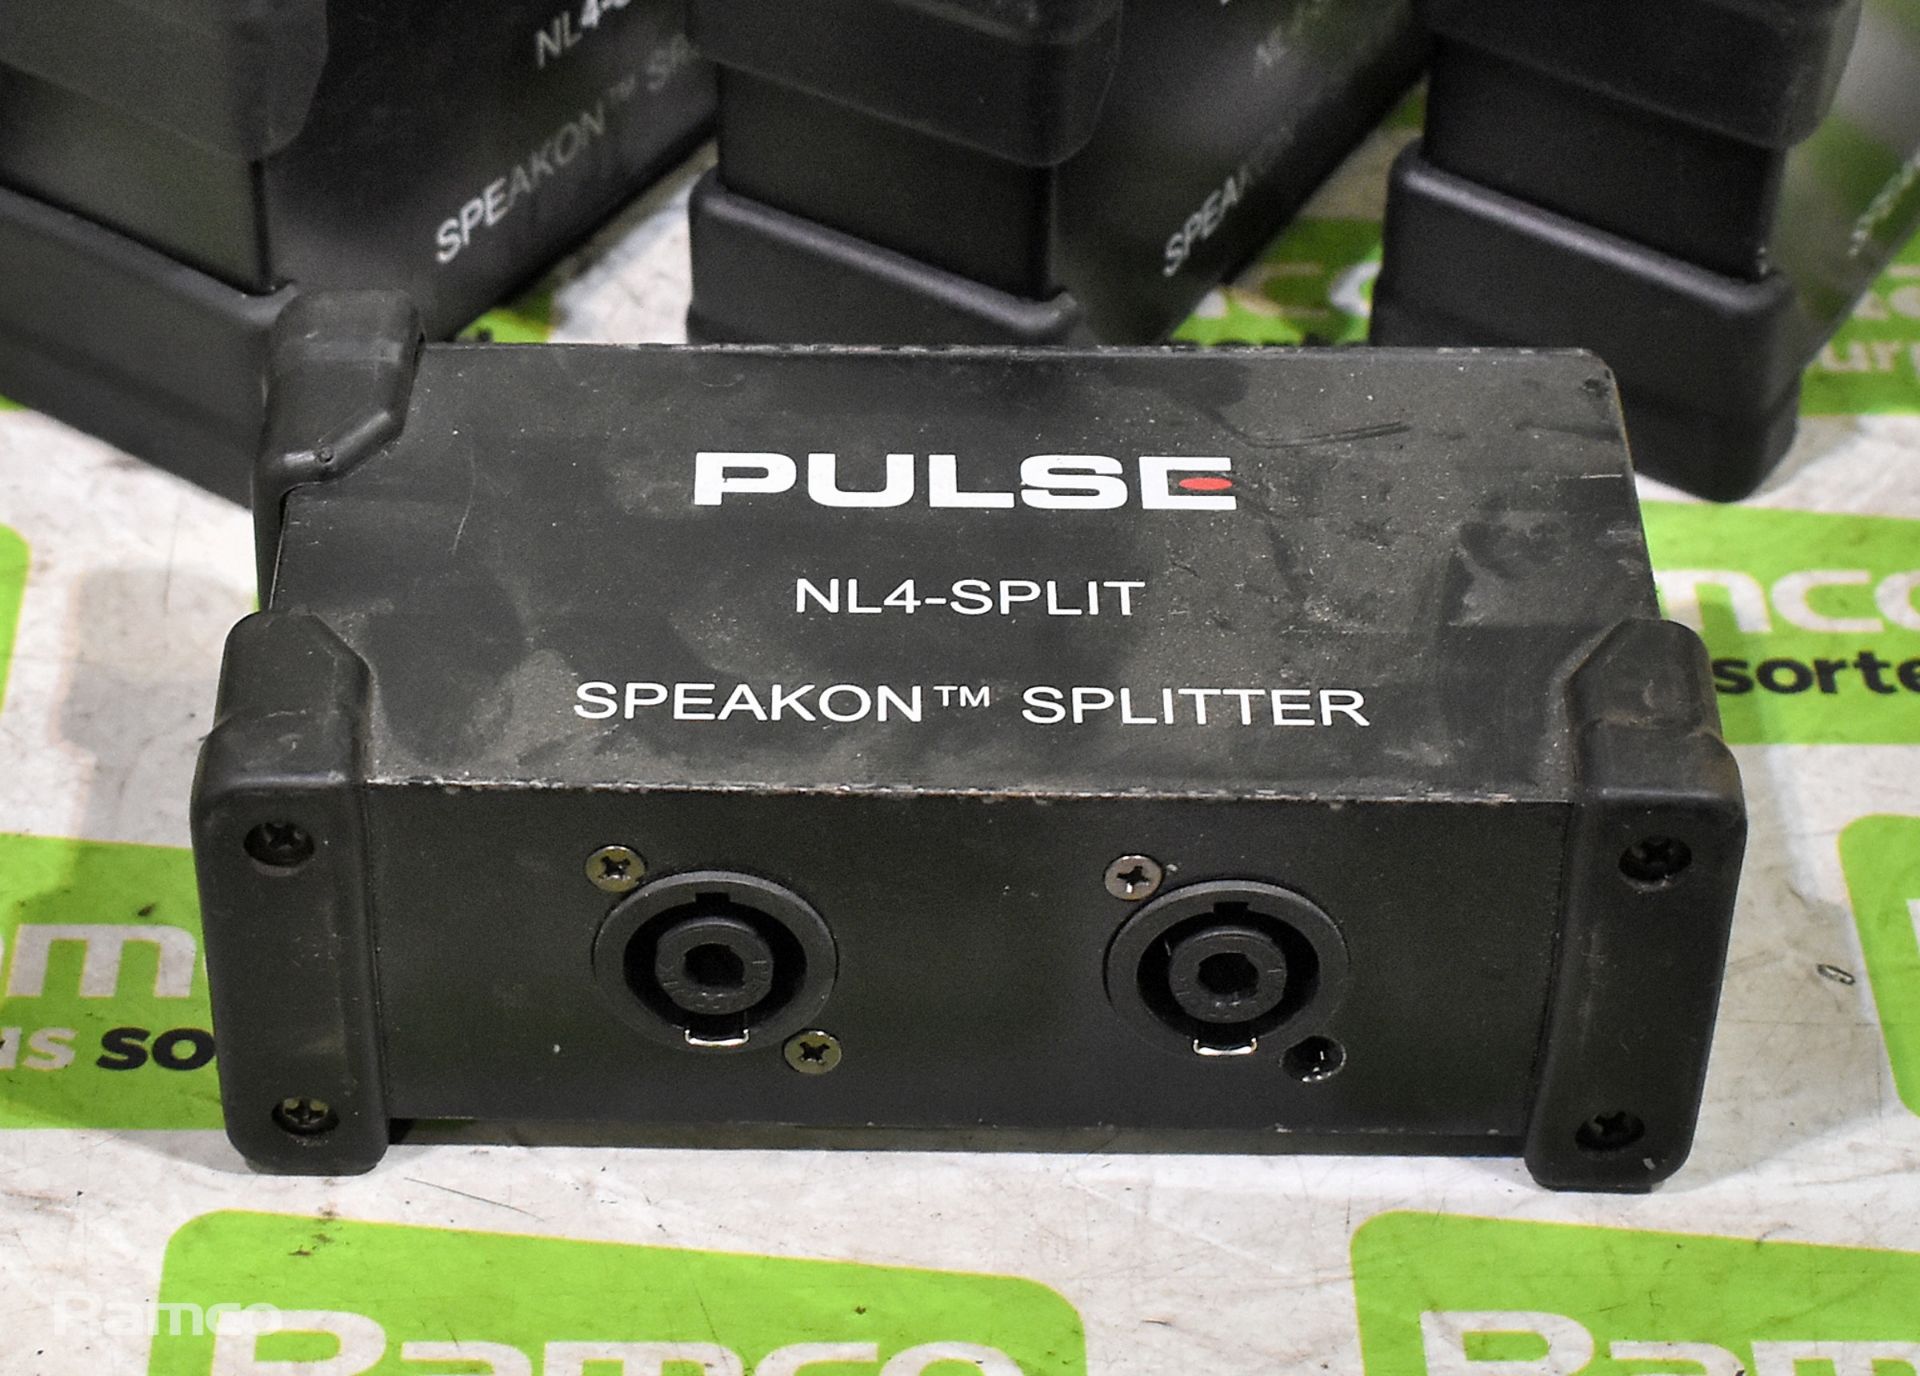 10x Pulse NL4-SPLIT Speakon splitter boxes - L 150 x W 80 x H 50mm - Bild 3 aus 3